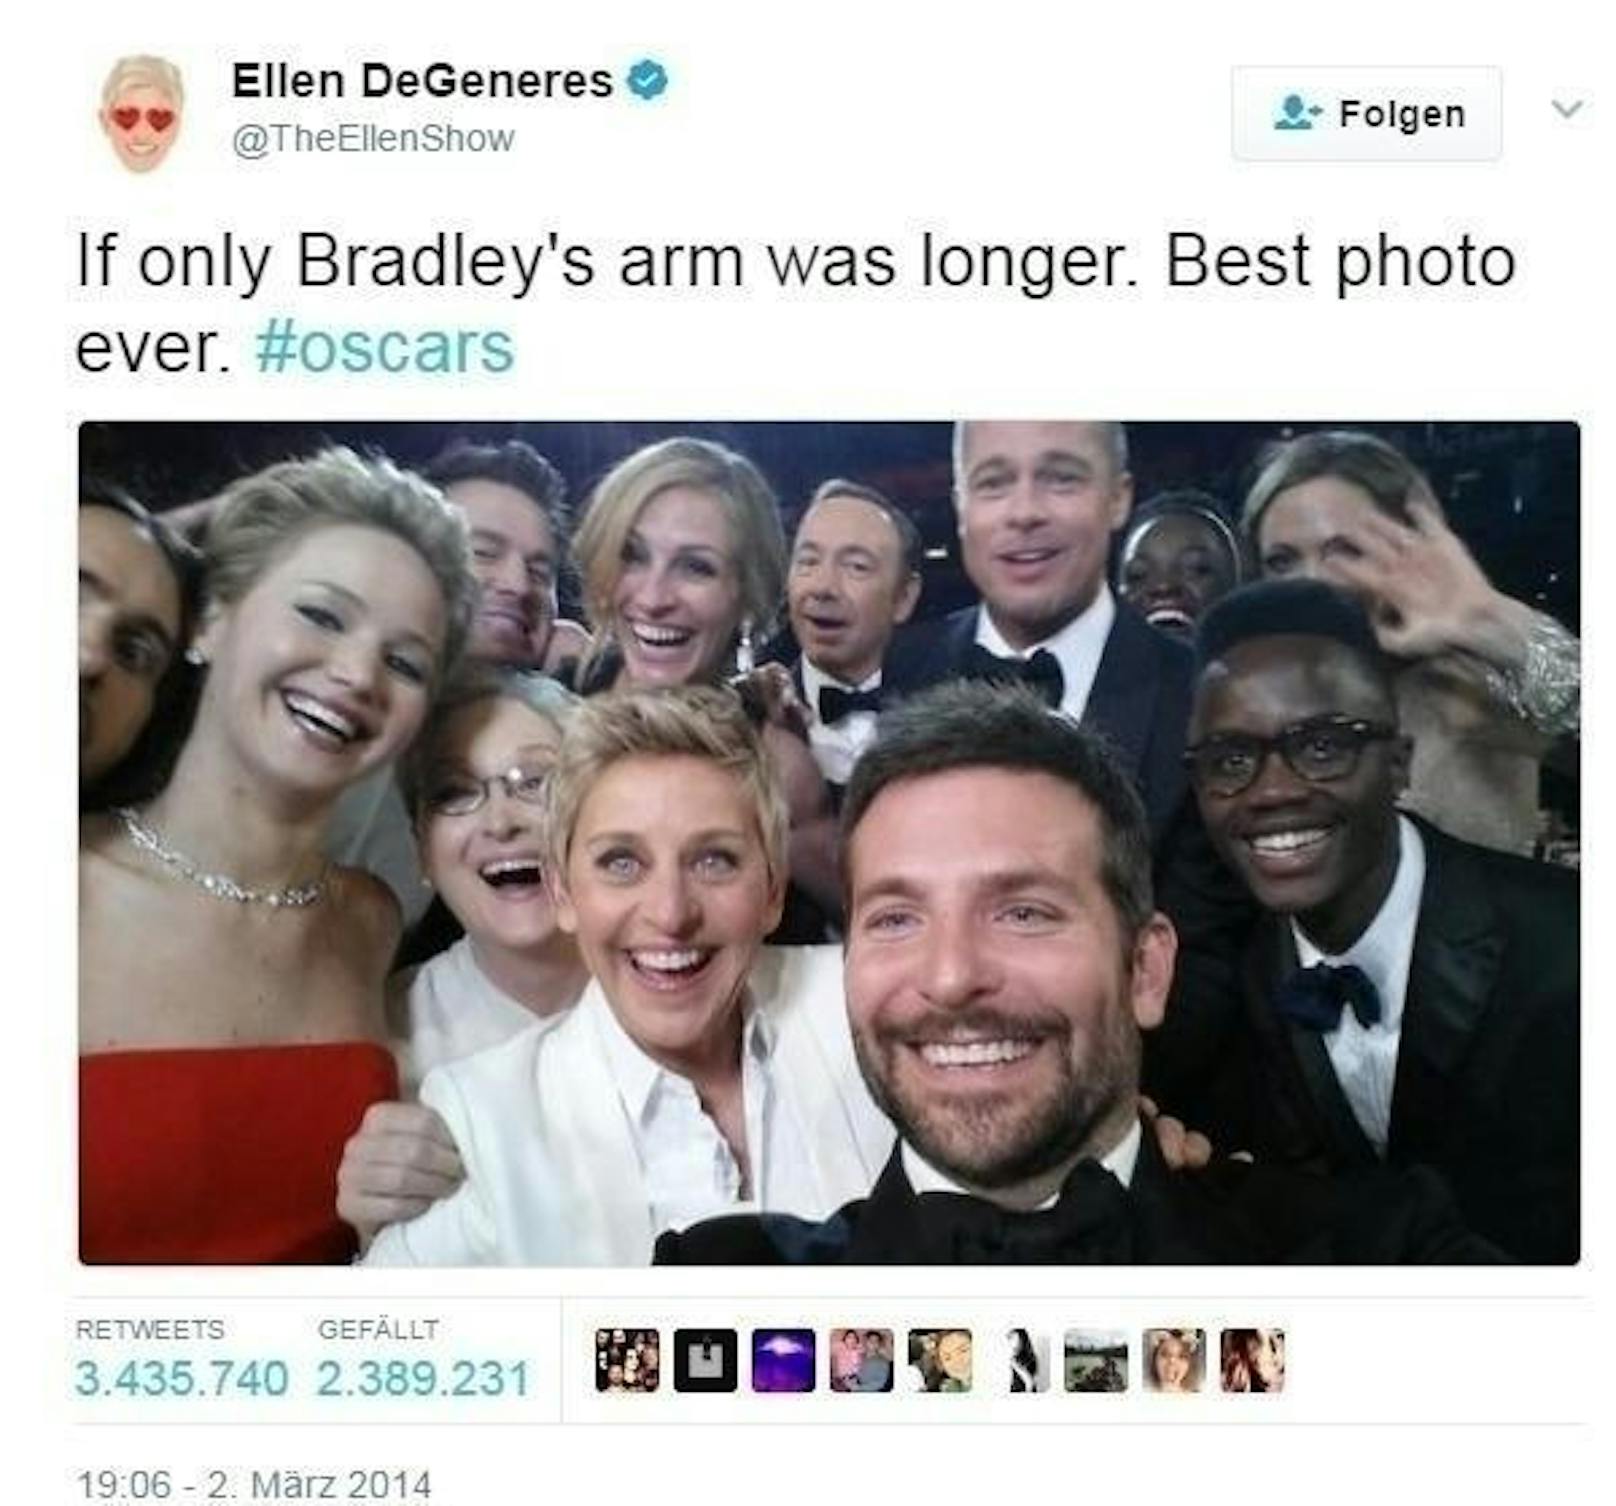 Der Appell zeigte Wirkung. Am Dienstag erreichte Wilkerson über 3,6 Millionen Retweets, mehr als Ellen Degeneres mit ihrem berühmten Star-Selfie von der Oscar-Verleihung 2014.